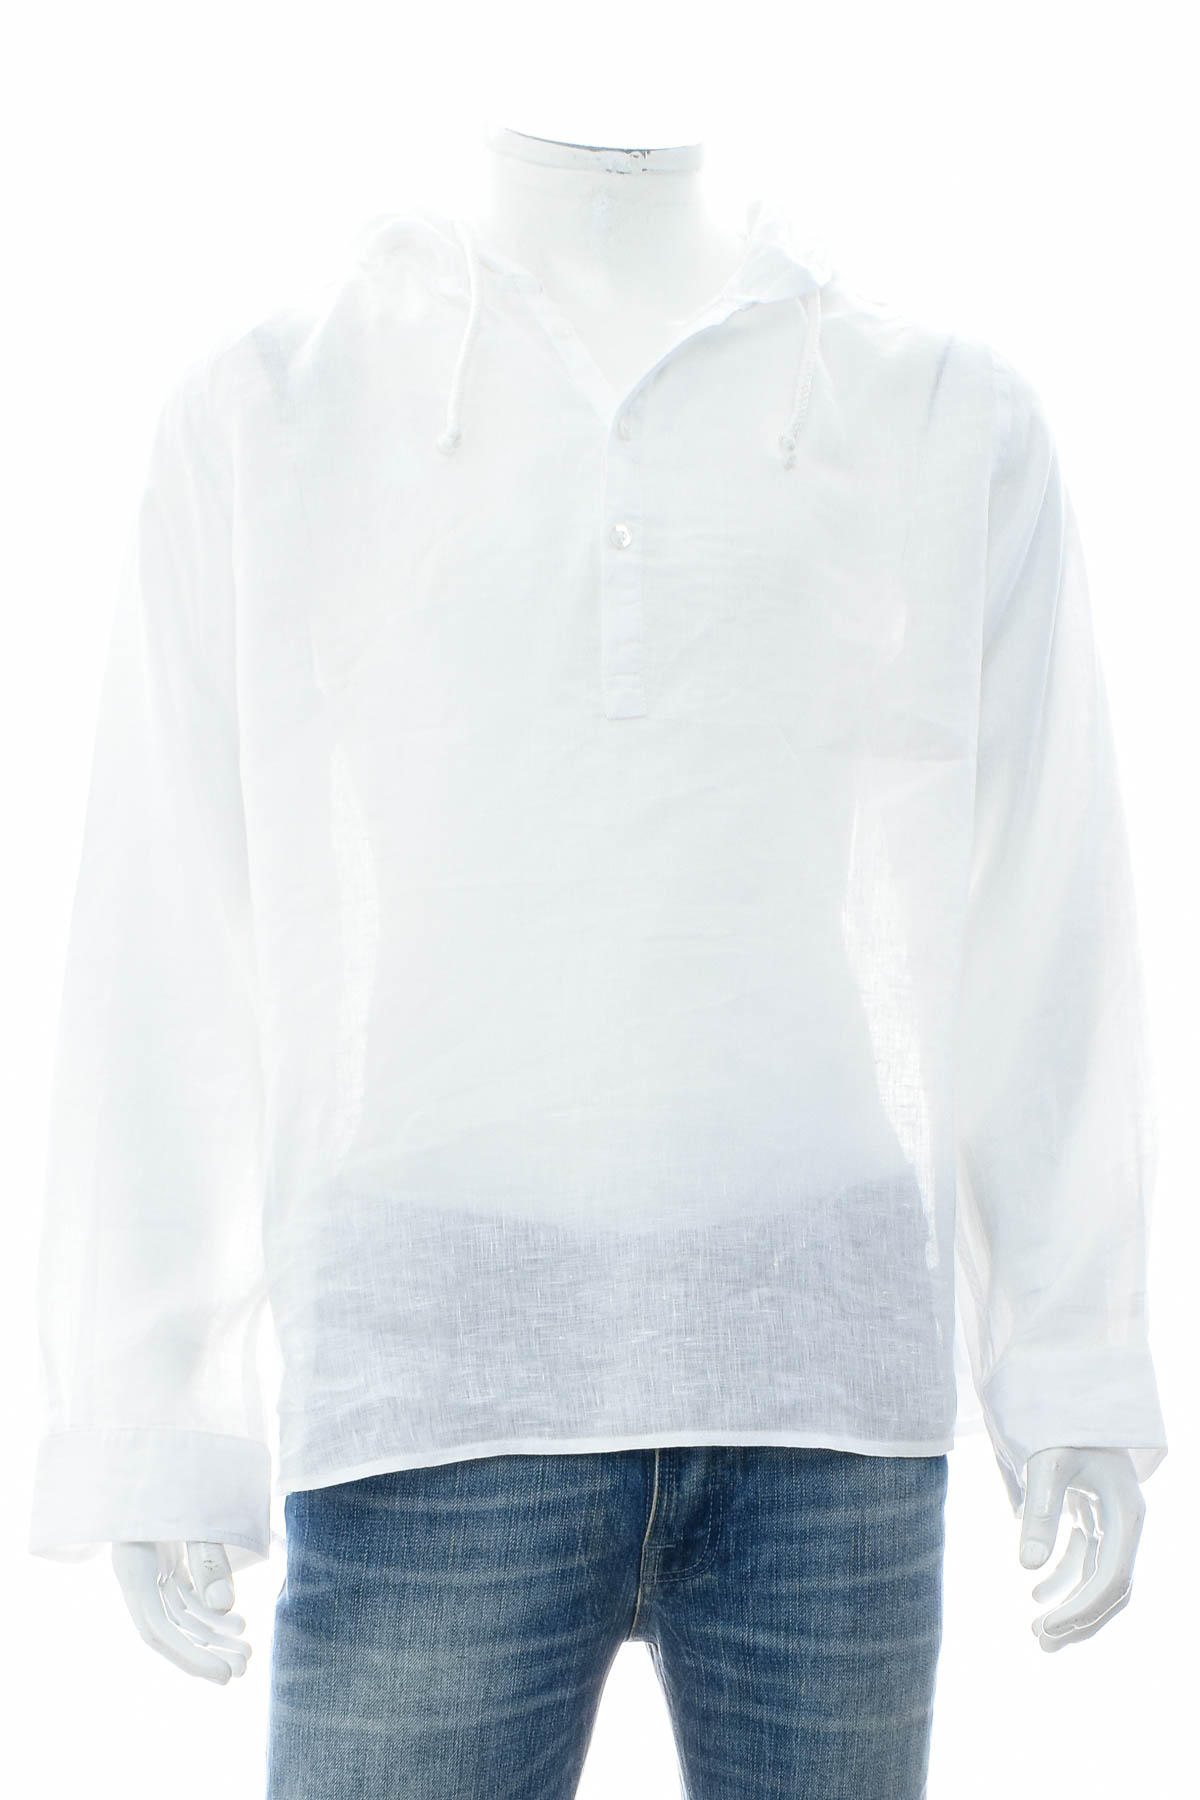 Ανδρικό πουκάμισο - Carnaby`s - 0